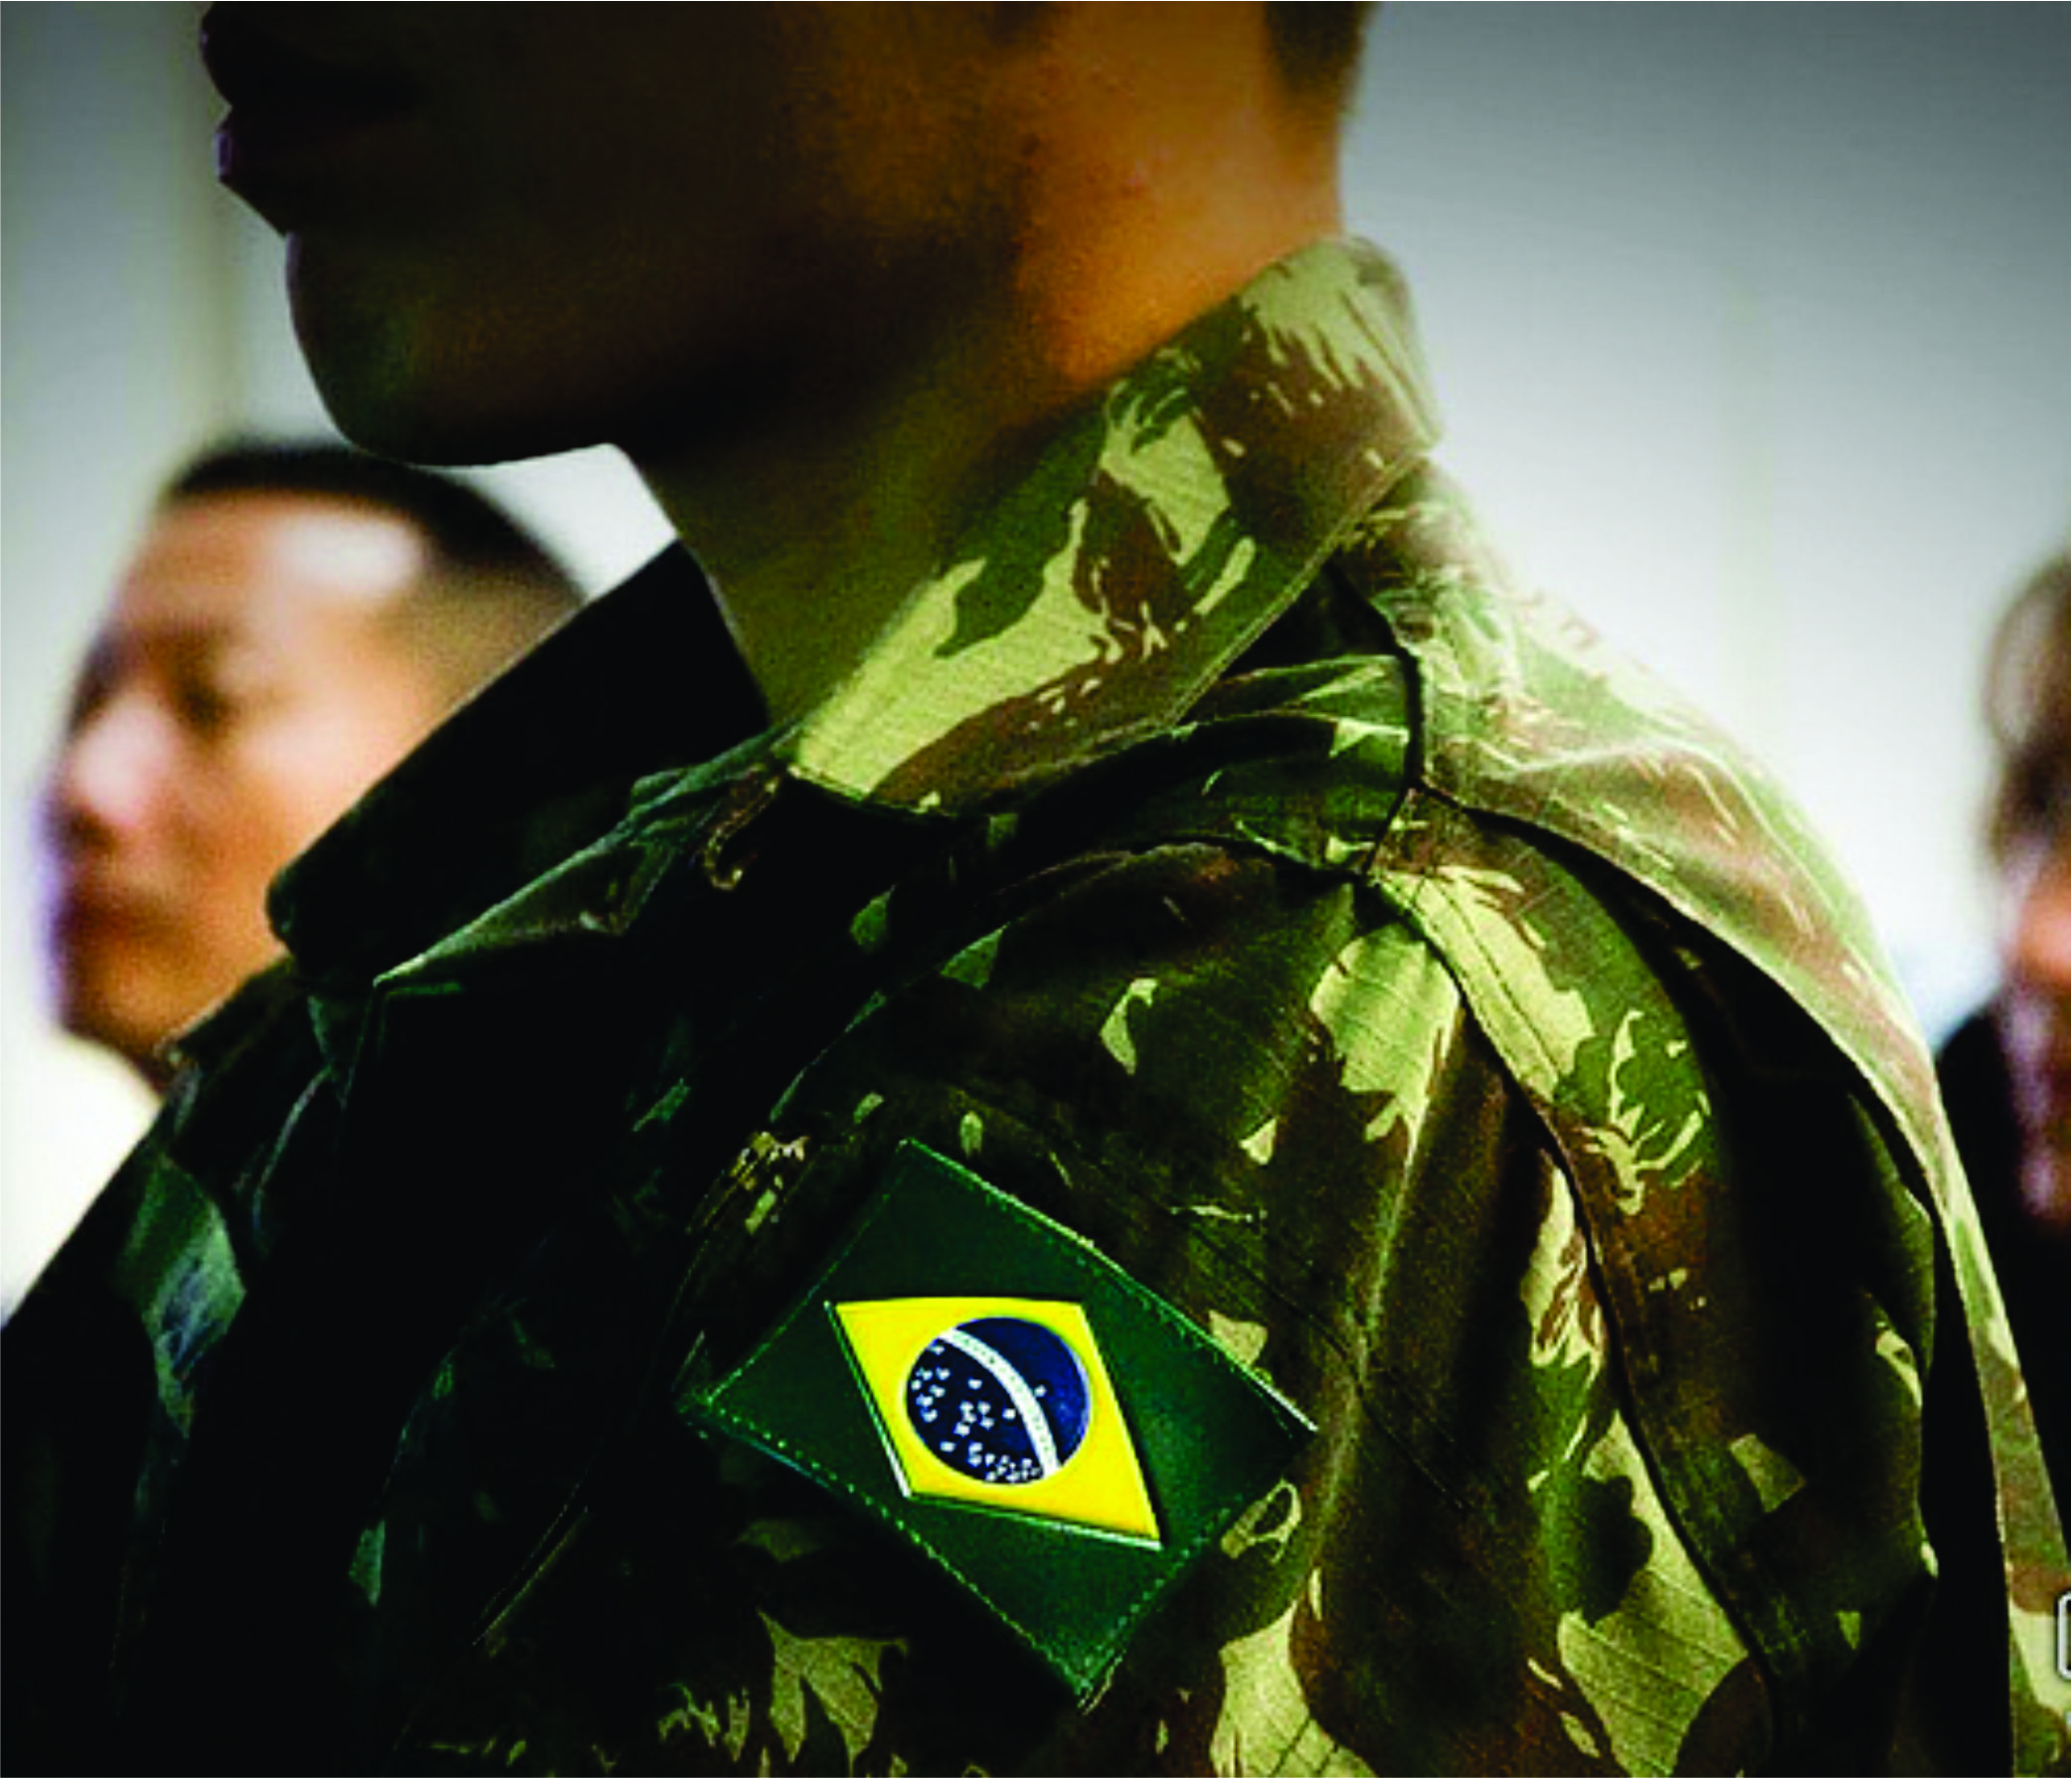 DECISÃO: Indevida a concessão de benefício de pensão pela exclusão do militar das fileiras do Exército Brasileiro